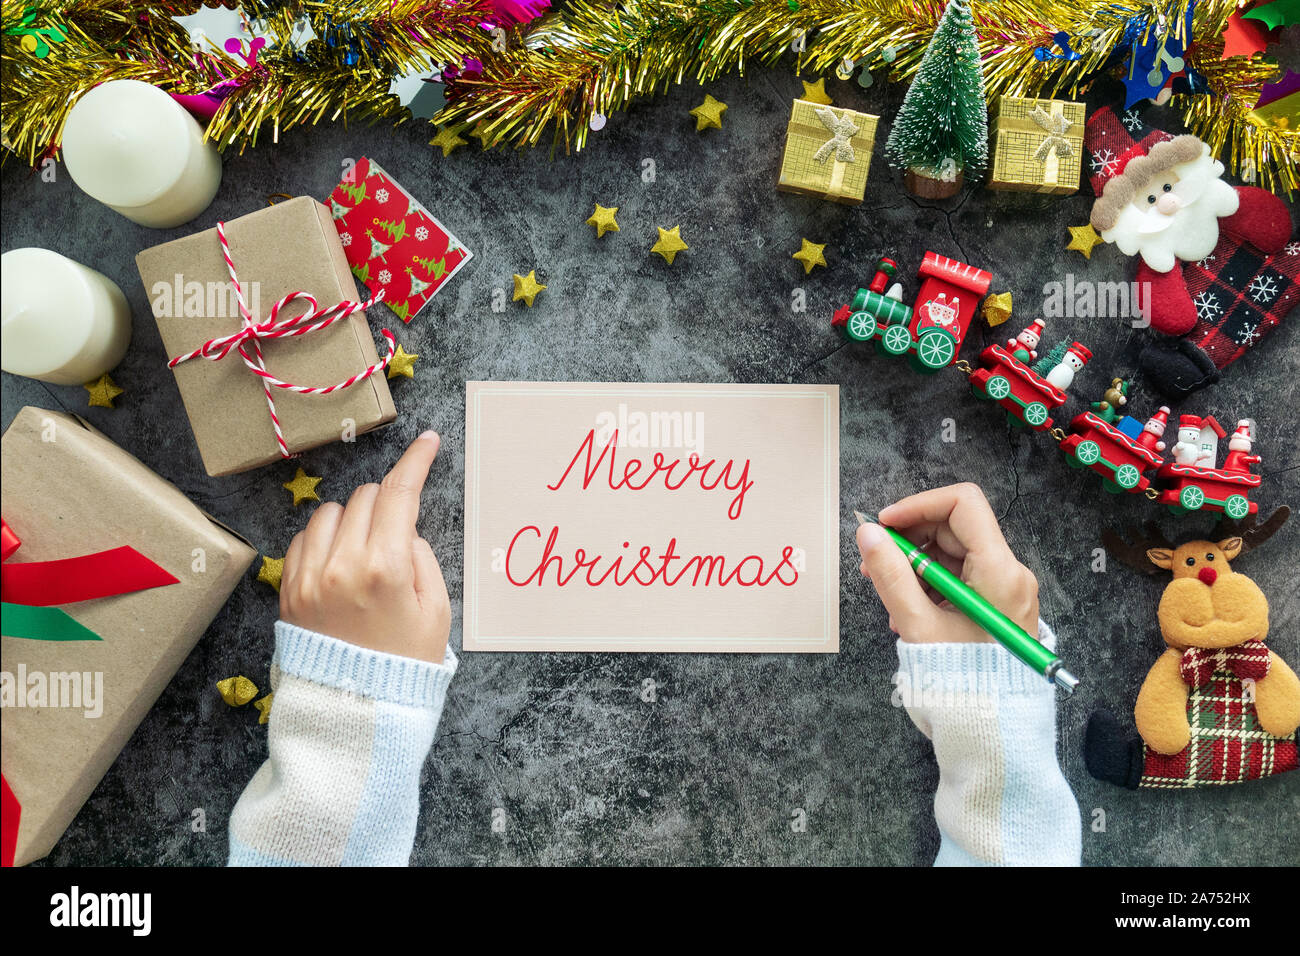 Escritura a mano Feliz Navidad en tarjetas de felicitación y regalos durante las Navidades festival, con decoraciones de Navidad en la mesa Foto de stock